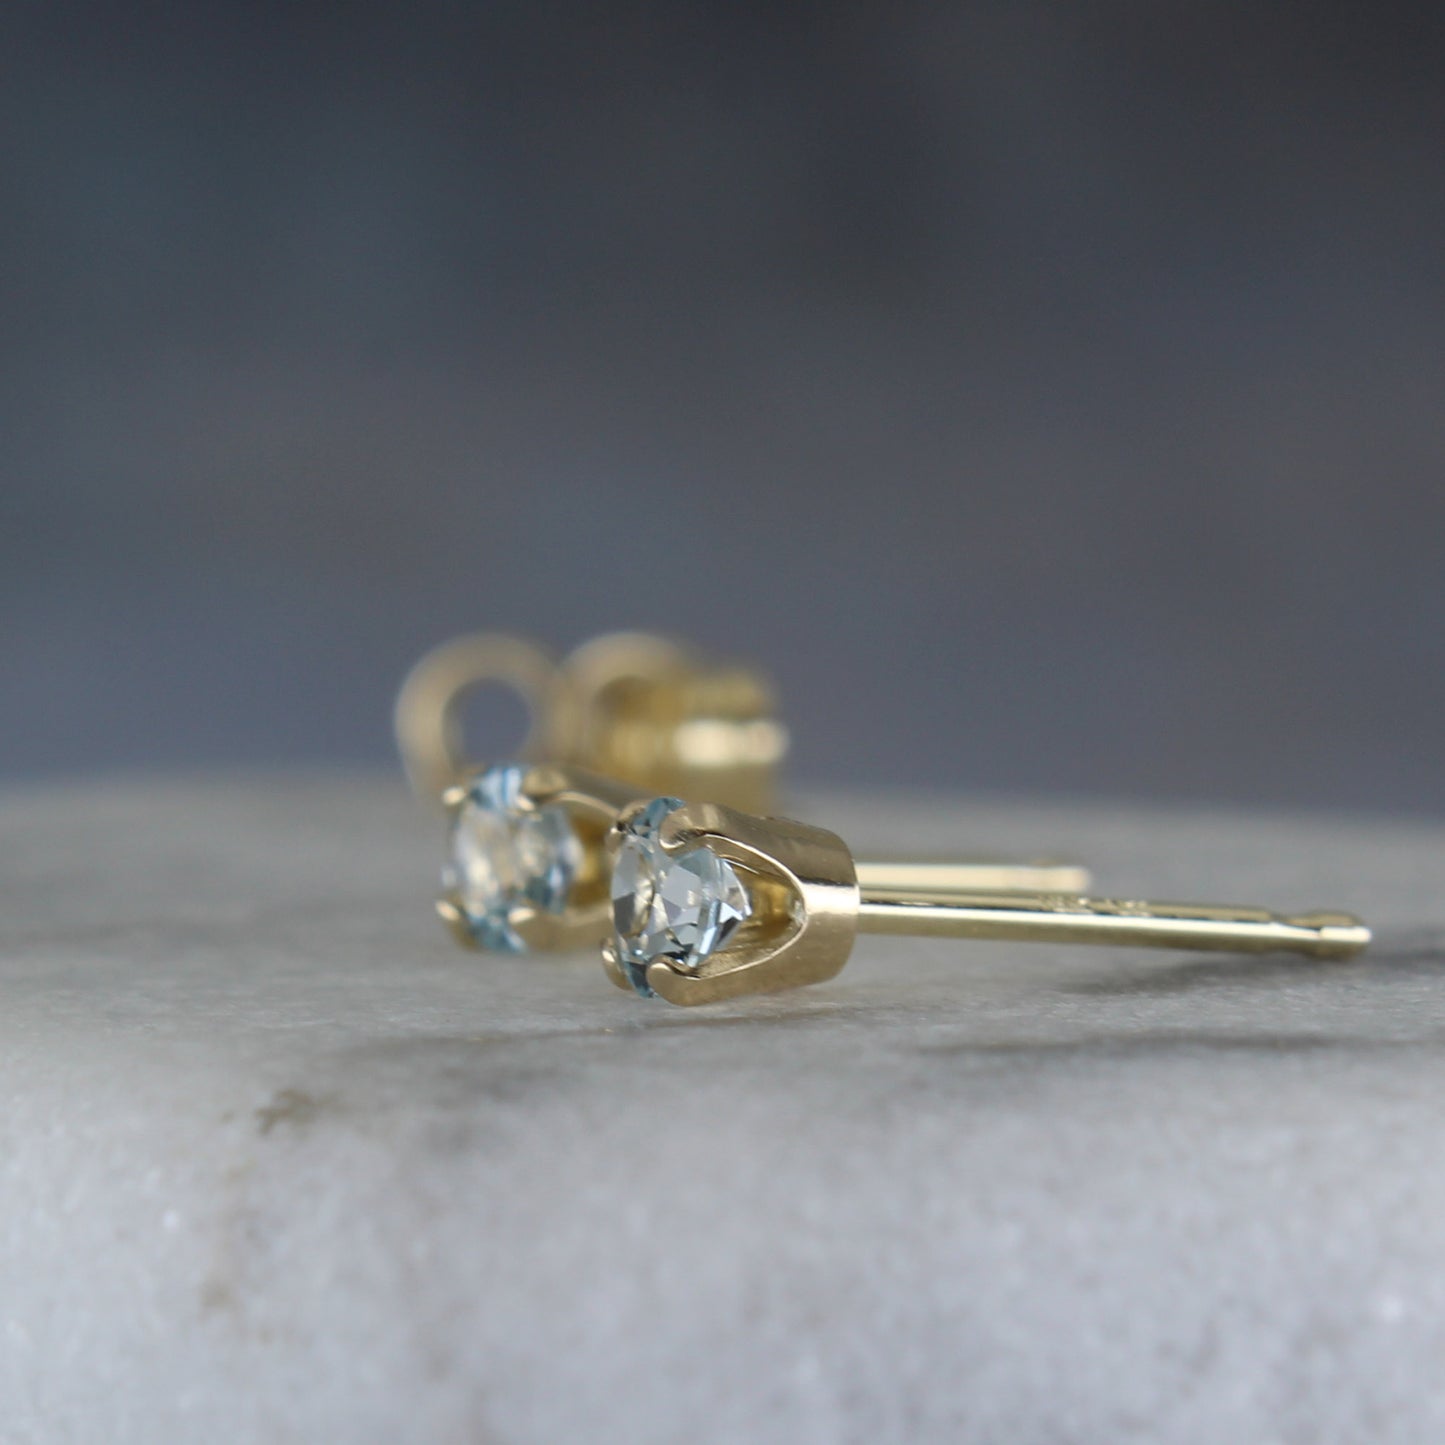 Blue topaz gemstone post earrings in 14k 